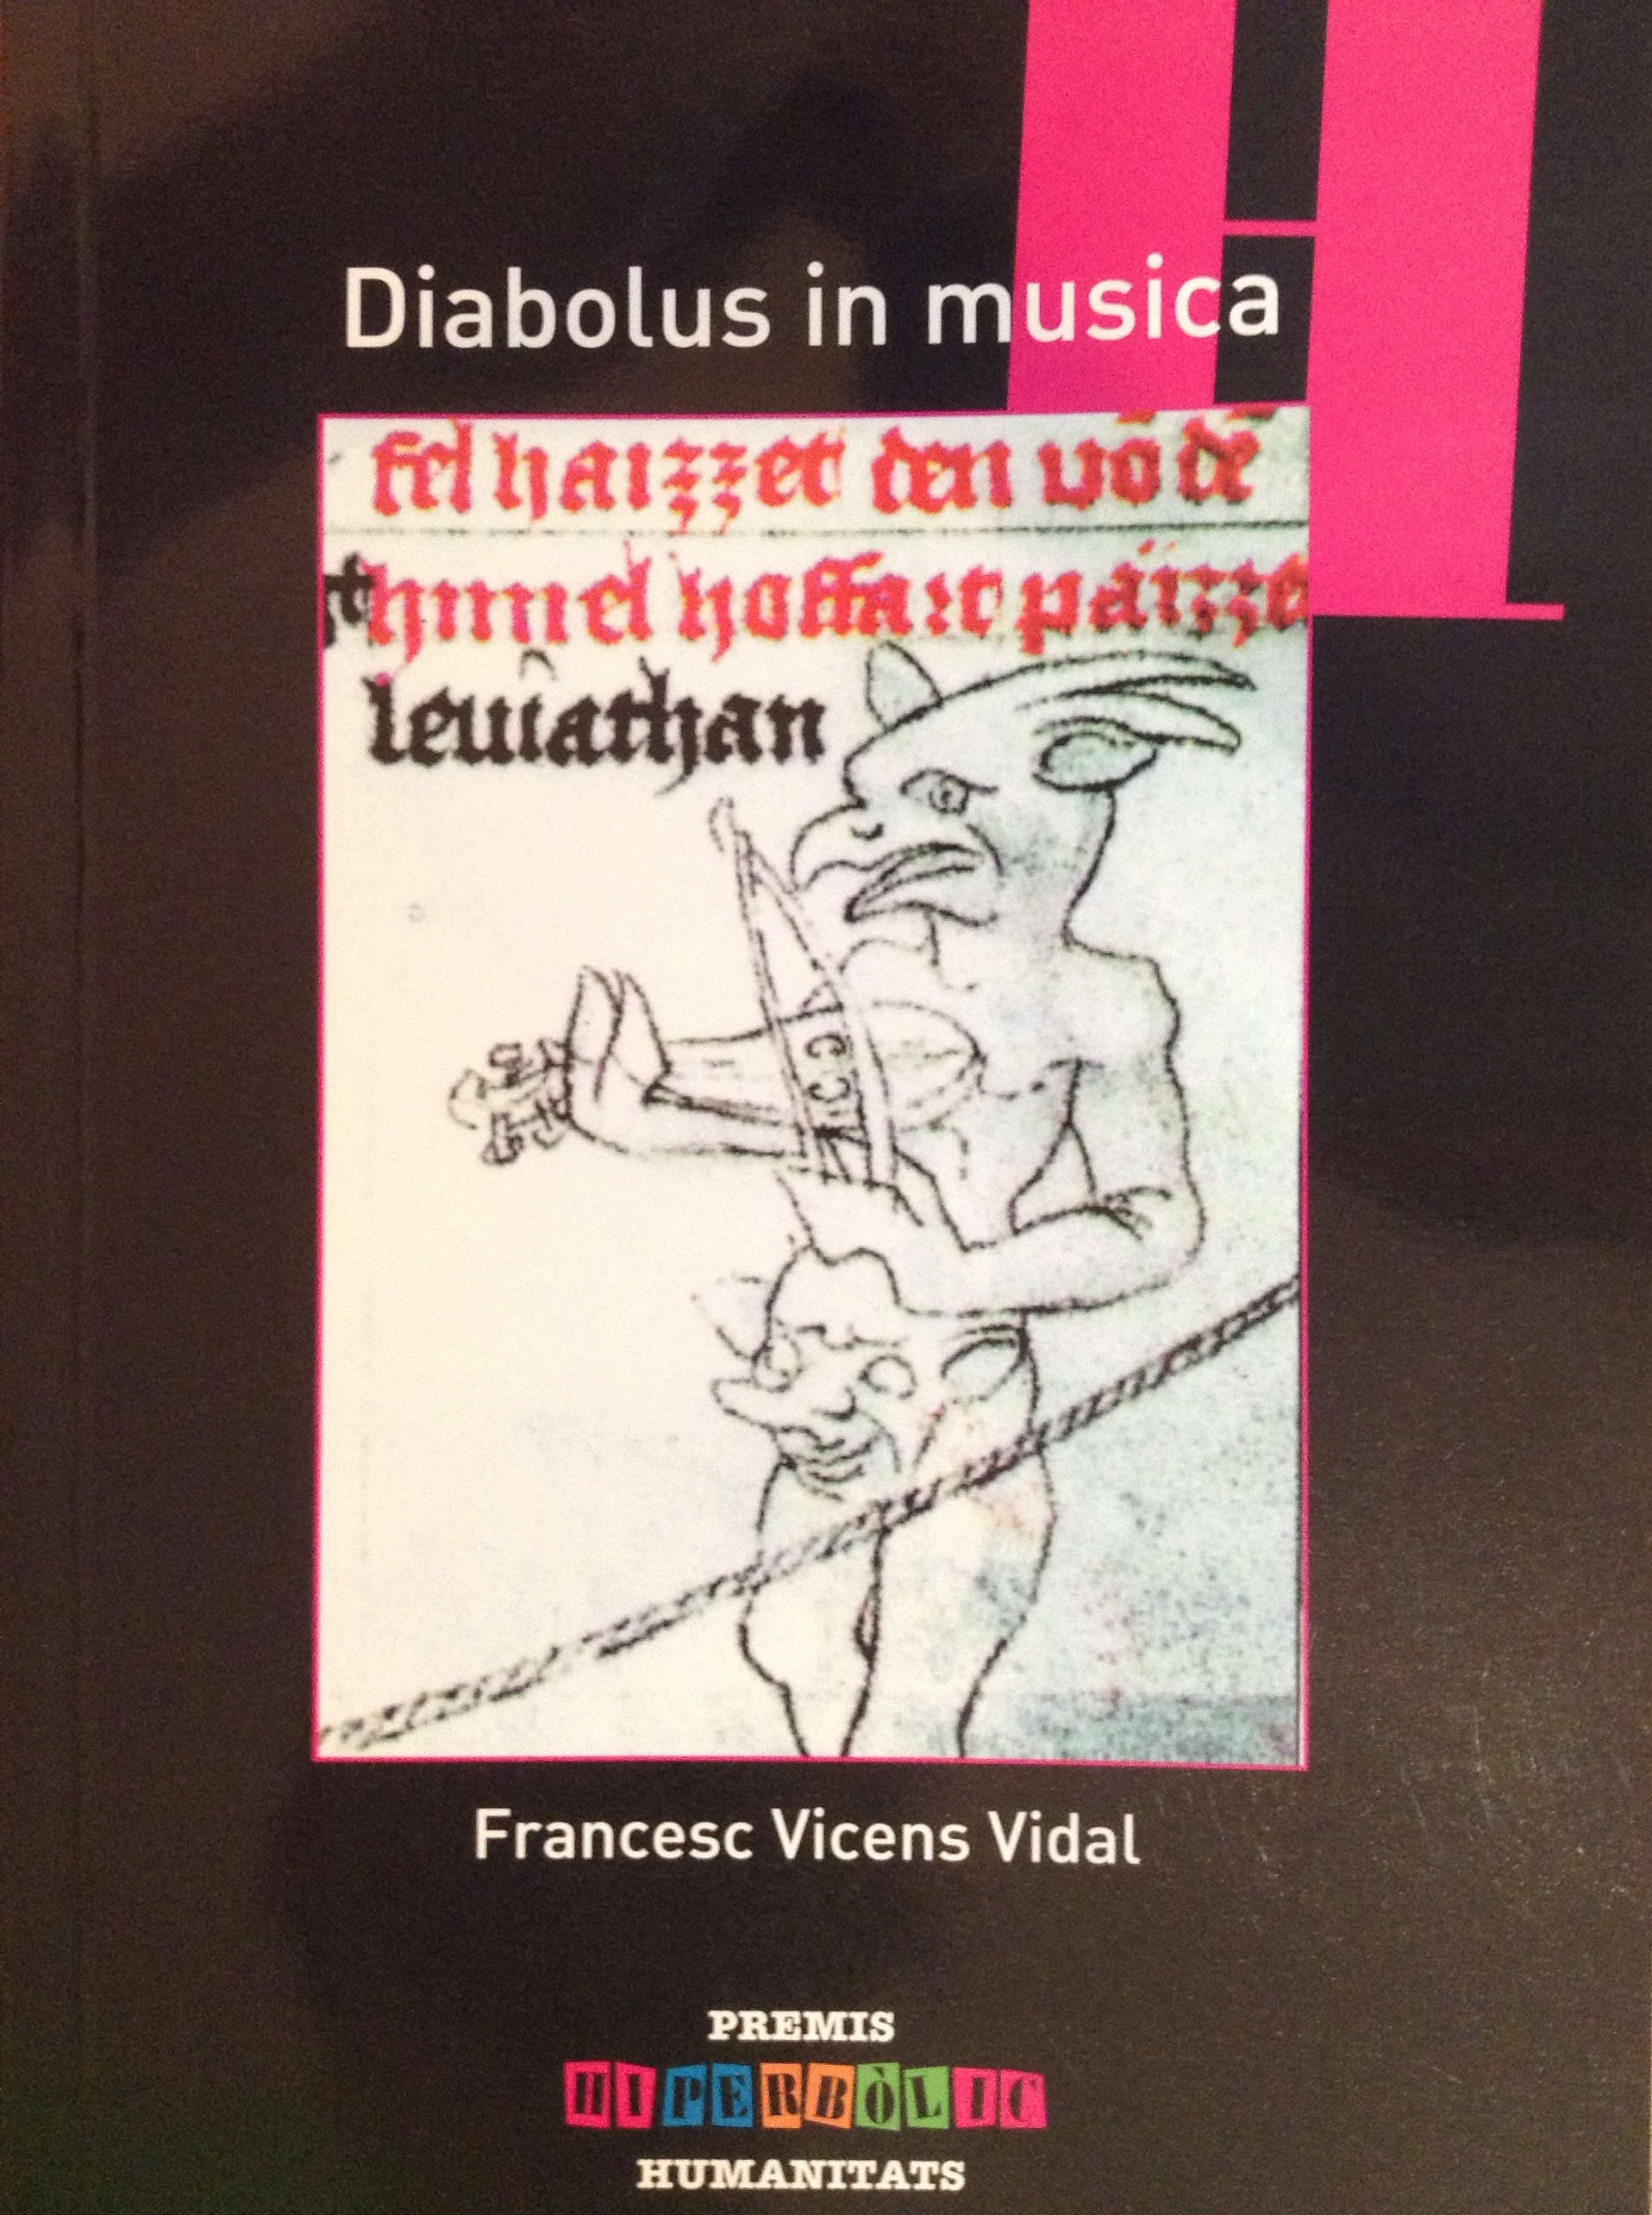 Imagen de portada del libro Diabolus in musica